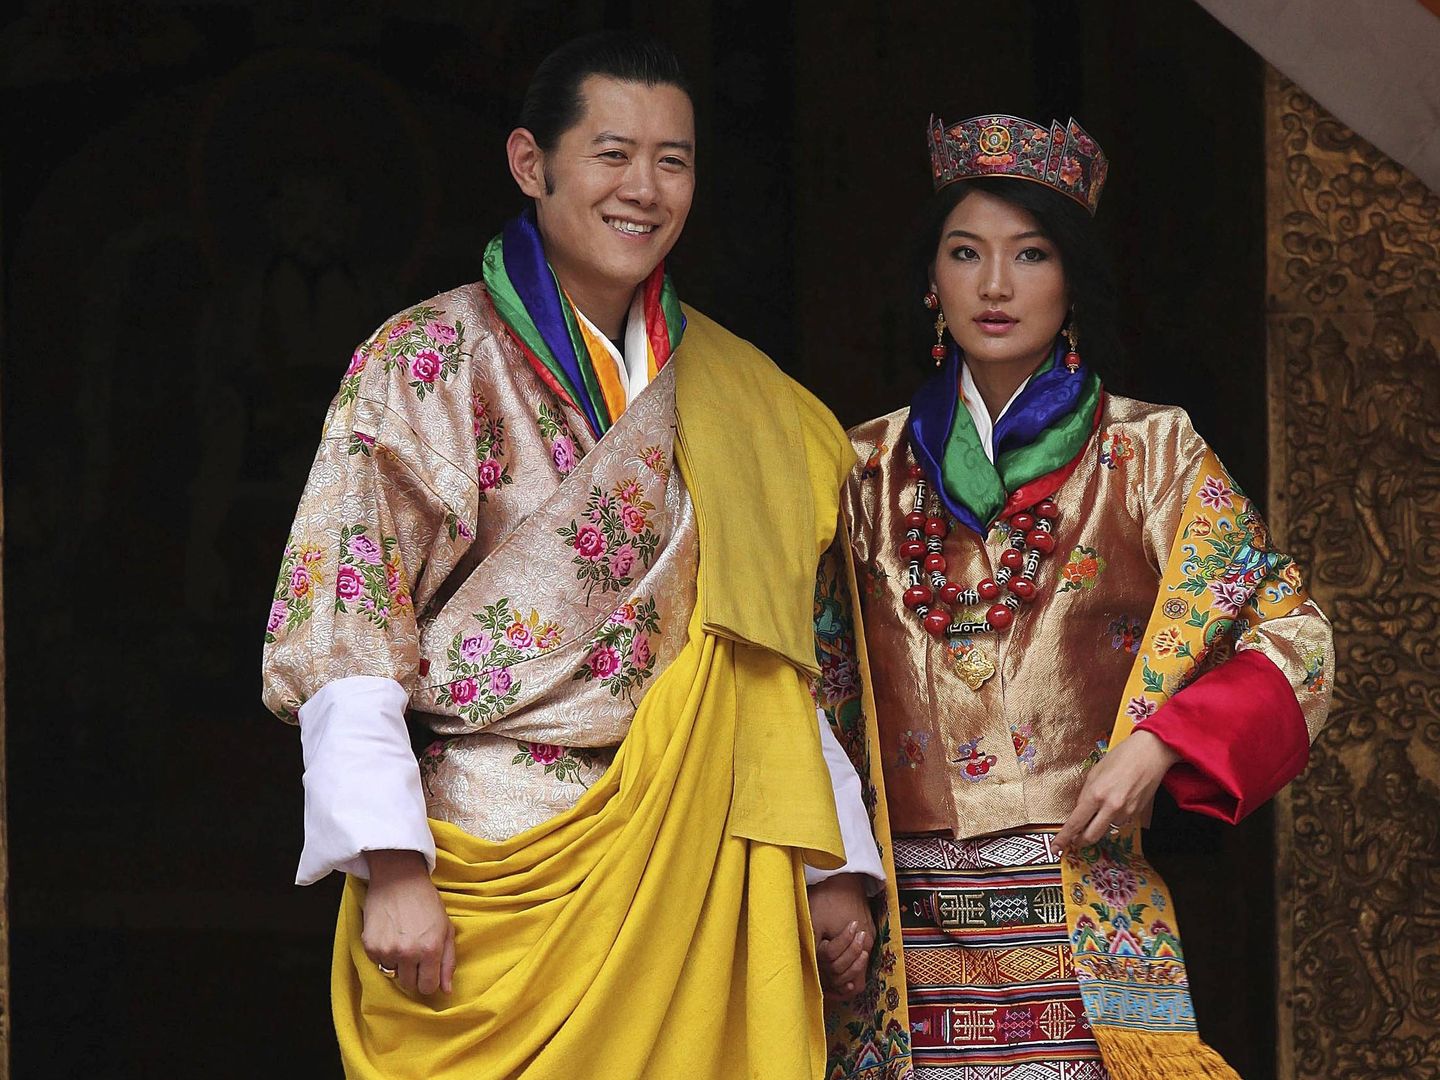 La boda de los Reyes de Bután, en 2011. (EFE)